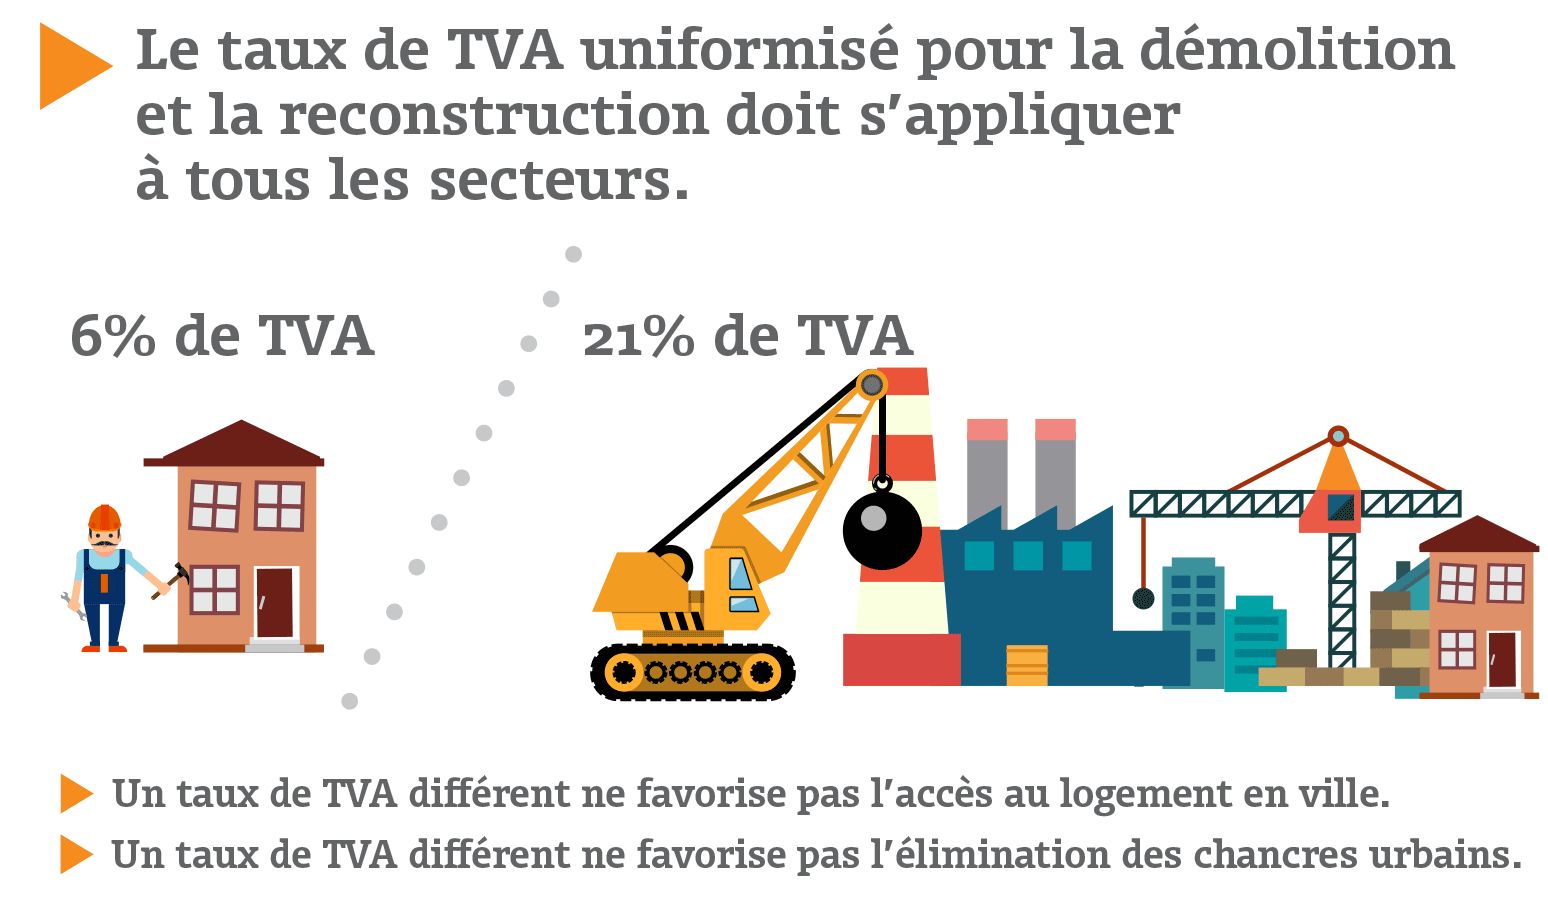 Le taux de TVA uniformisé pour la démolition et la reconstruction doit s'appliquer à tous les secteurs